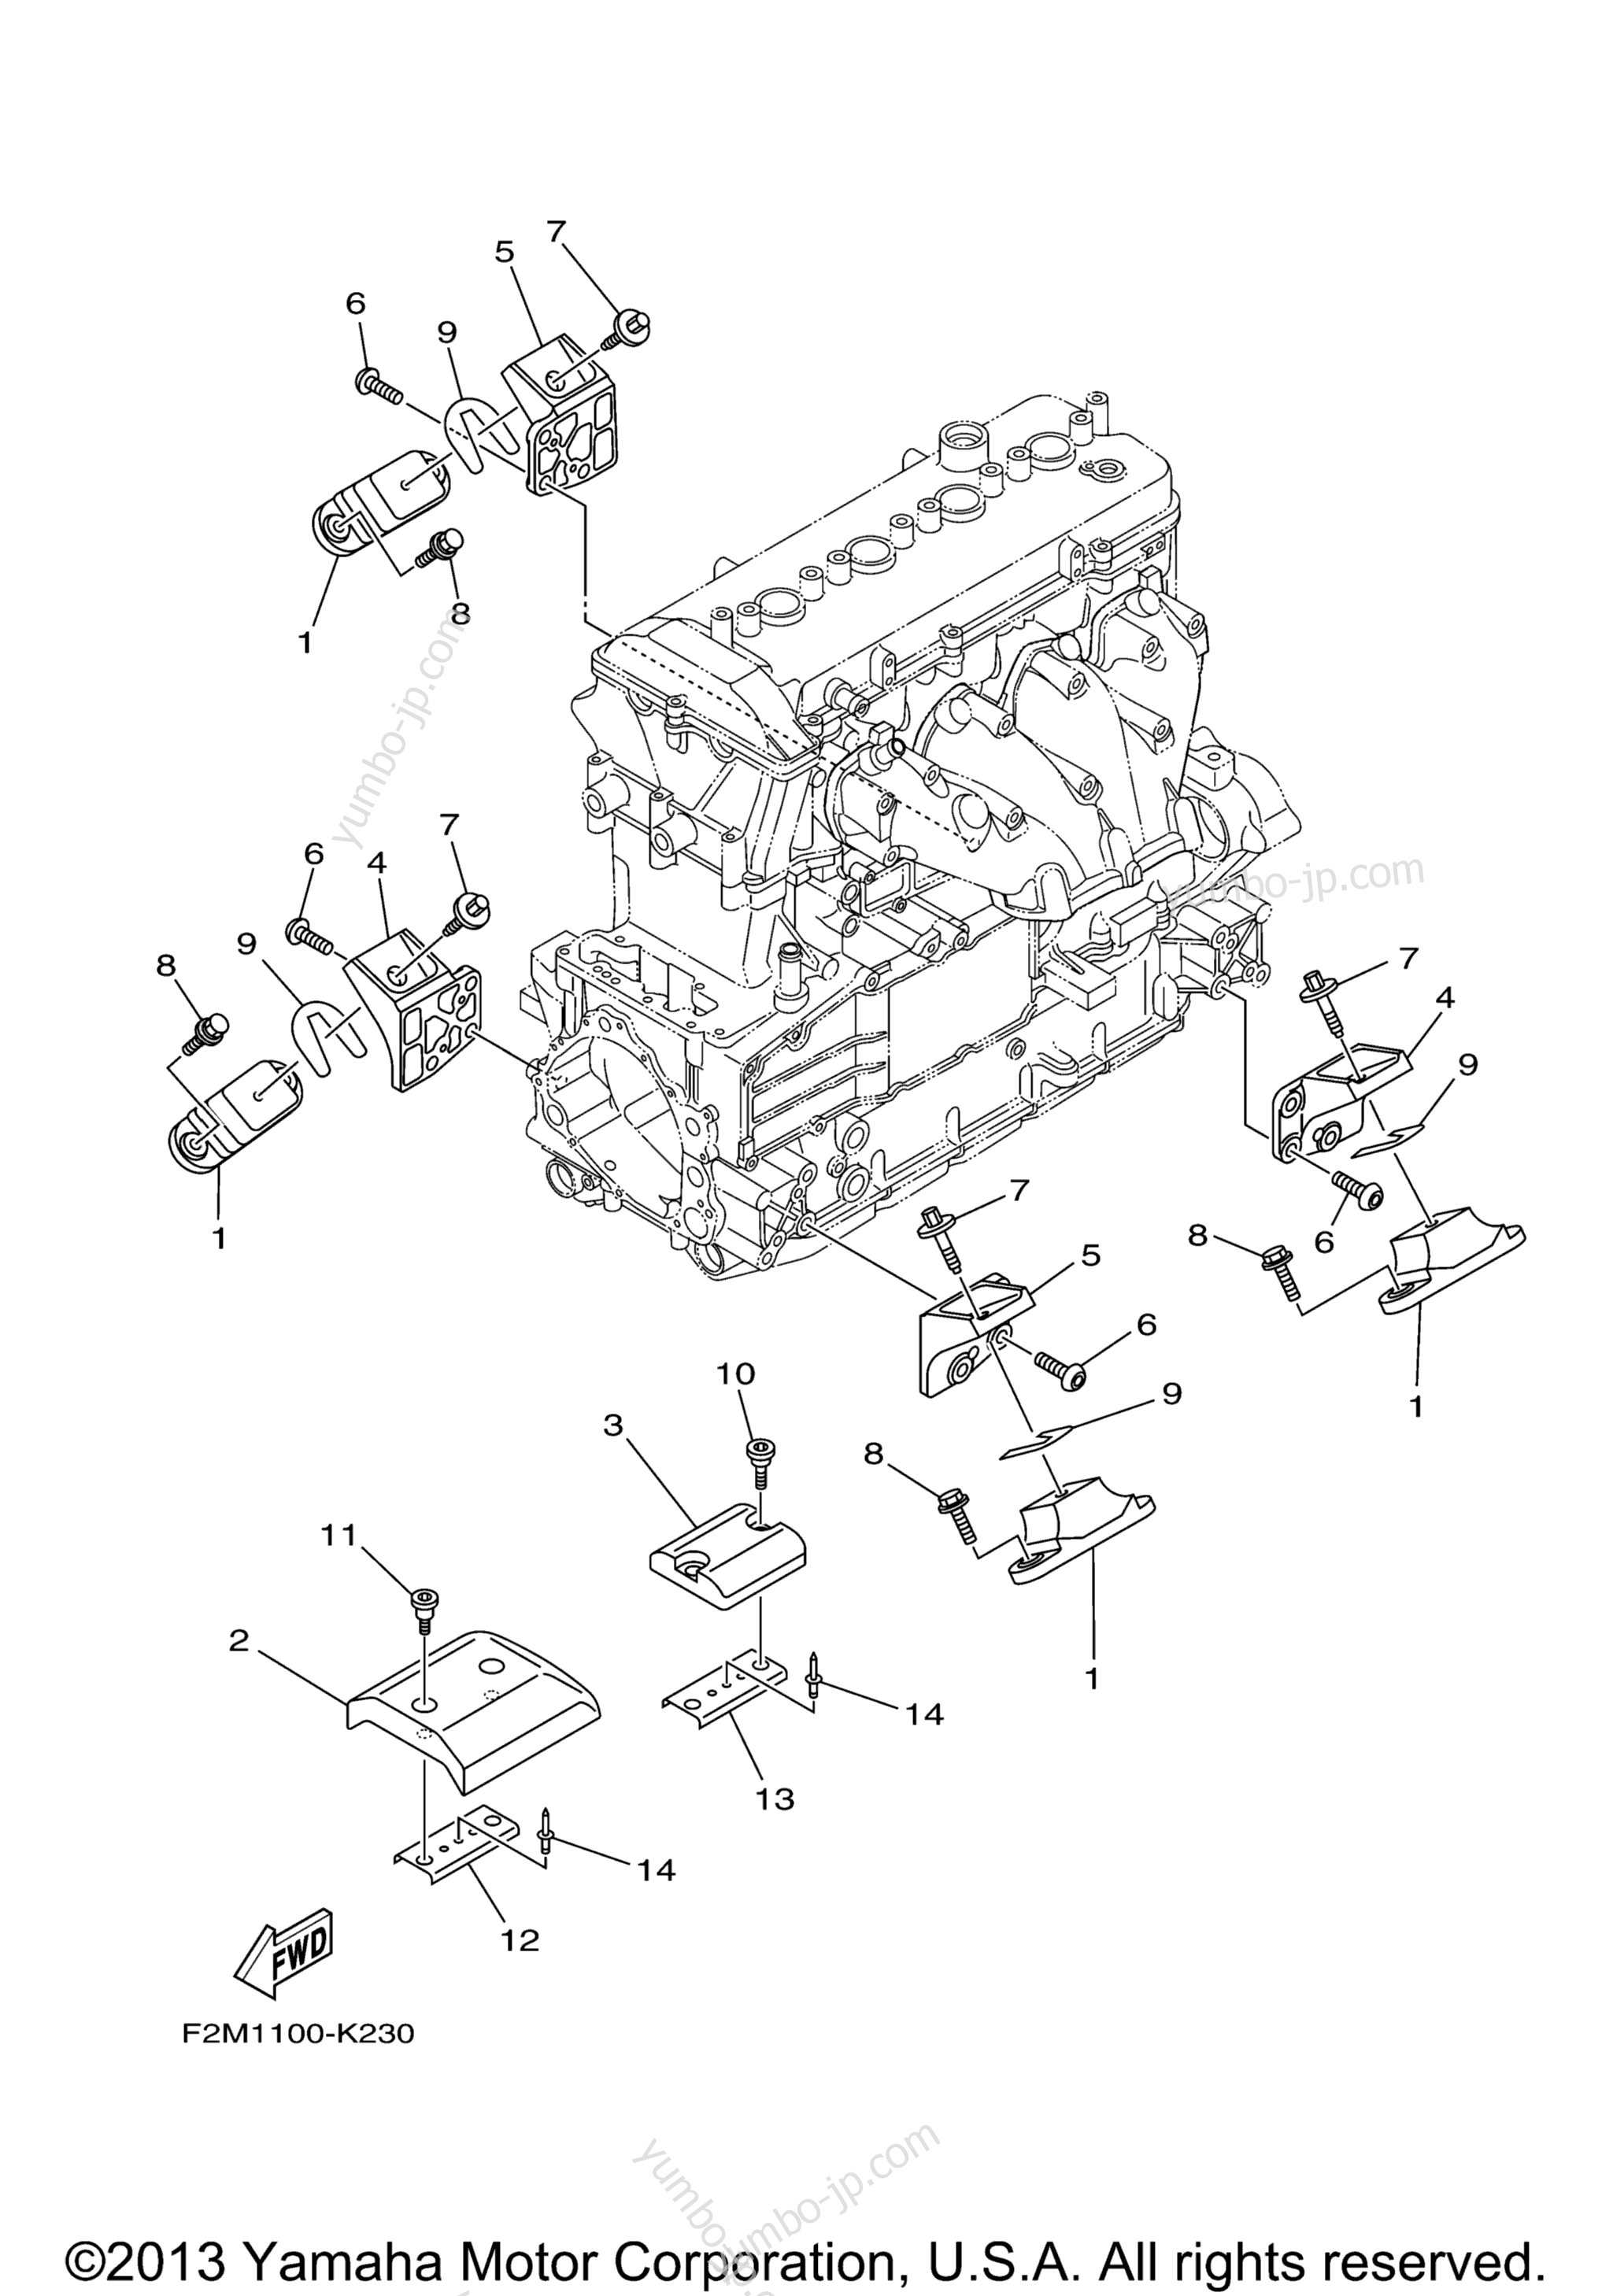 ENGINE MOUNT для гидроциклов YAMAHA VXR (VX1800AM) 2013 г.